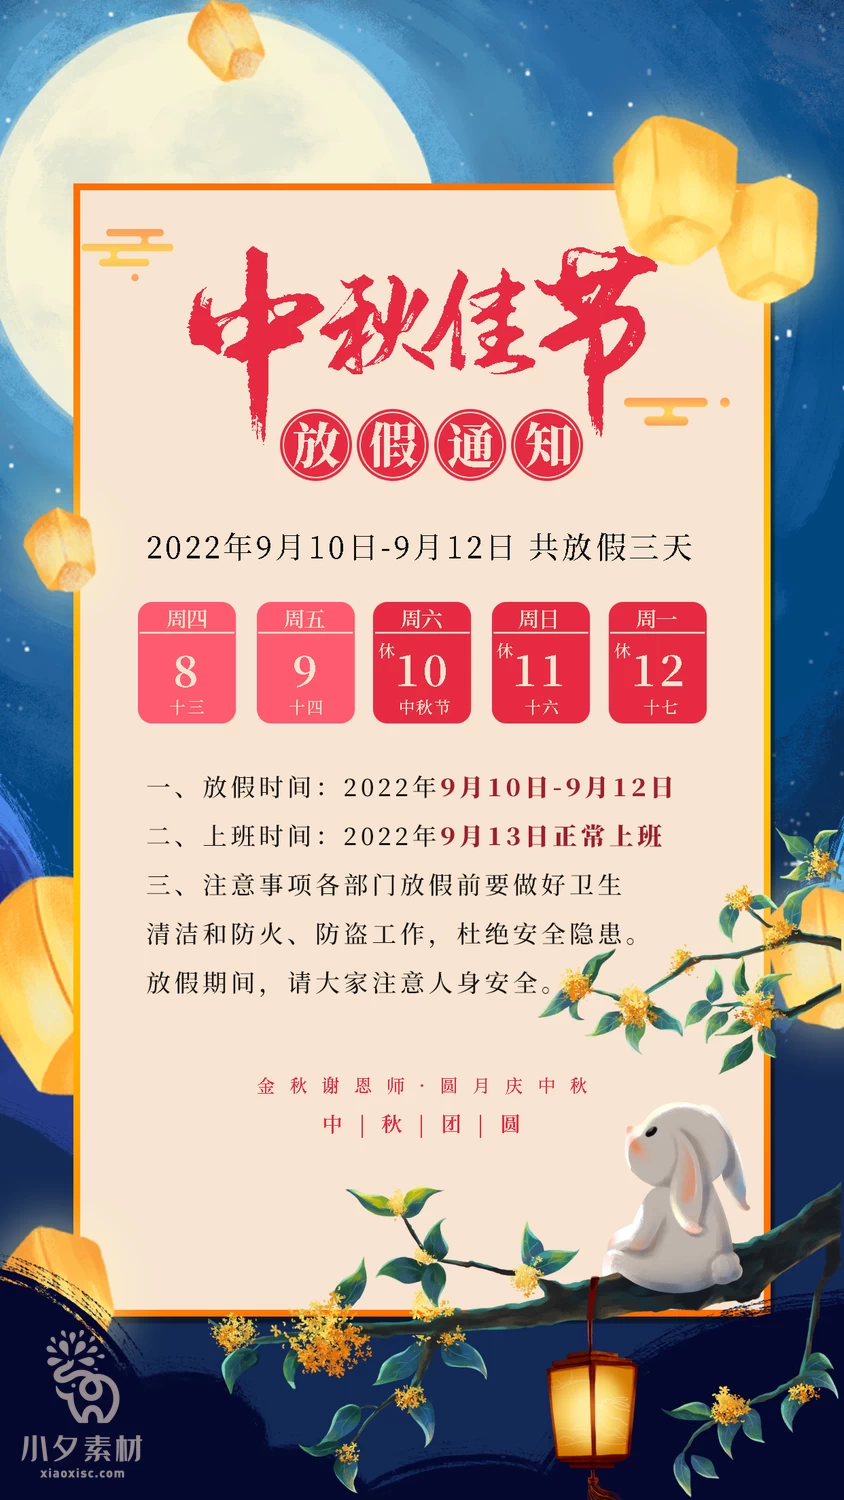 中秋节节日节庆放假通知海报模板PSD分层设计素材【012】